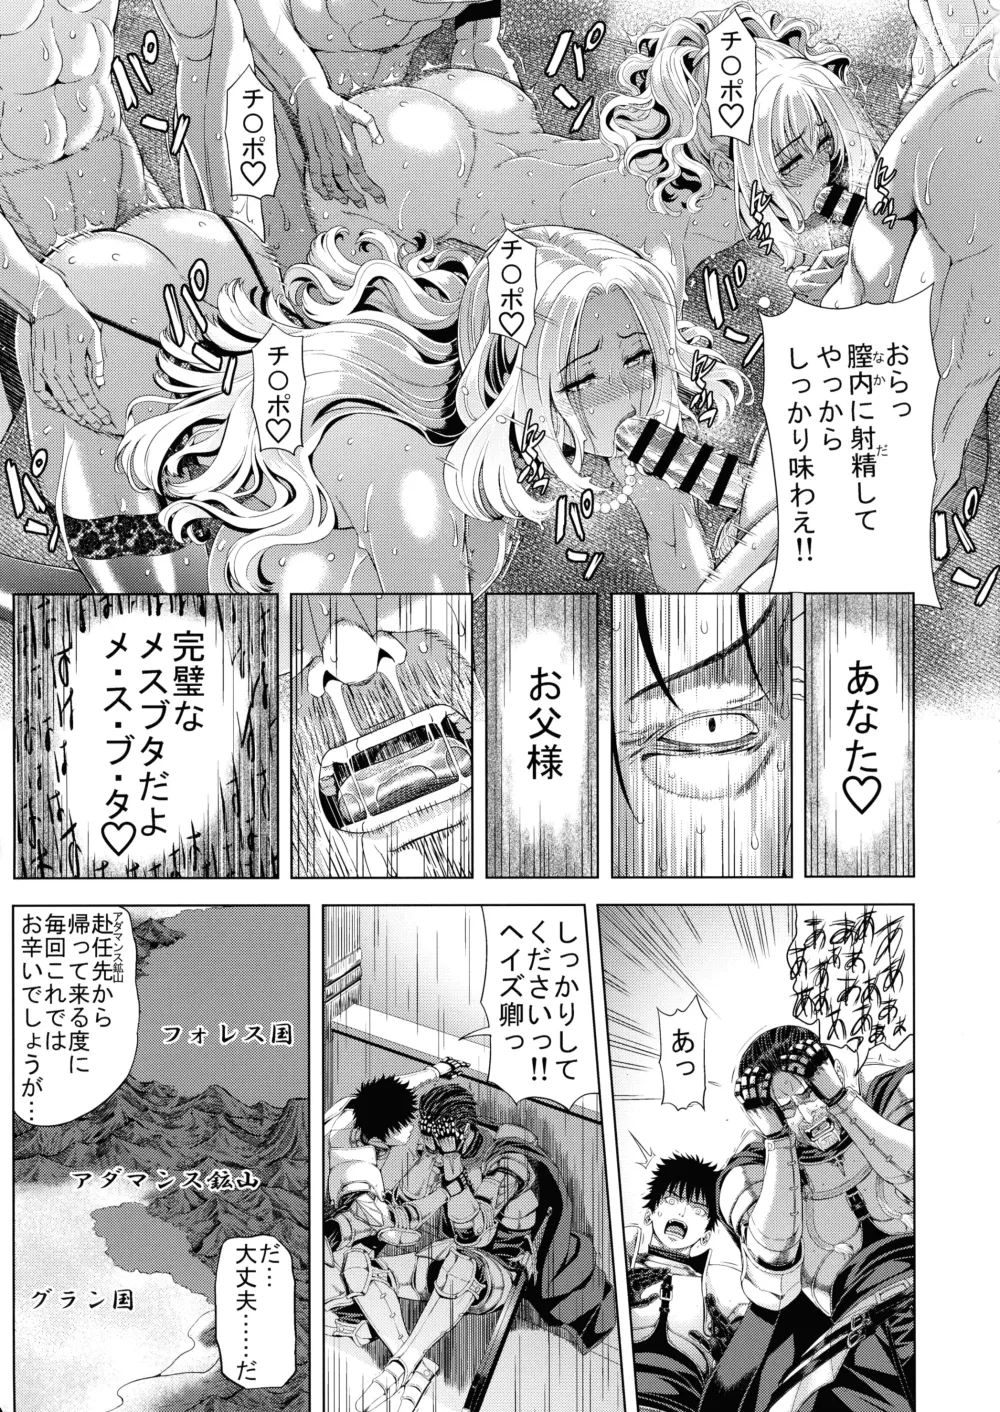 Page 11 of doujinshi Kyouki no Oukoku San no Shou